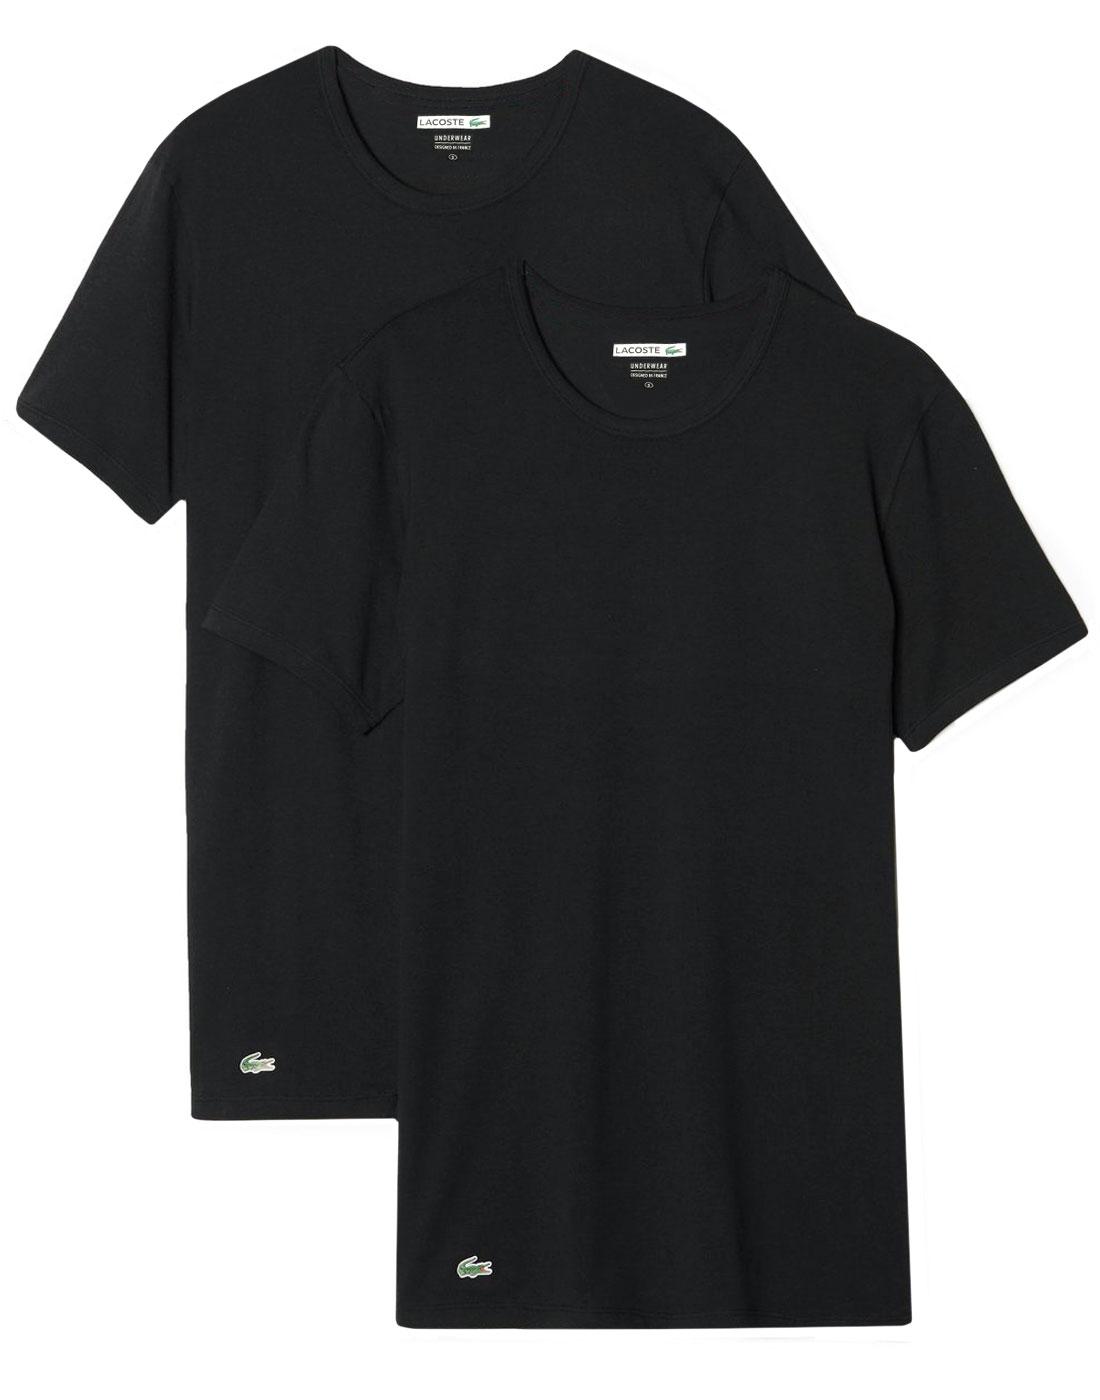 LACOSTE Men's 2 Pack Crew Neck T-Shirt - BLACK